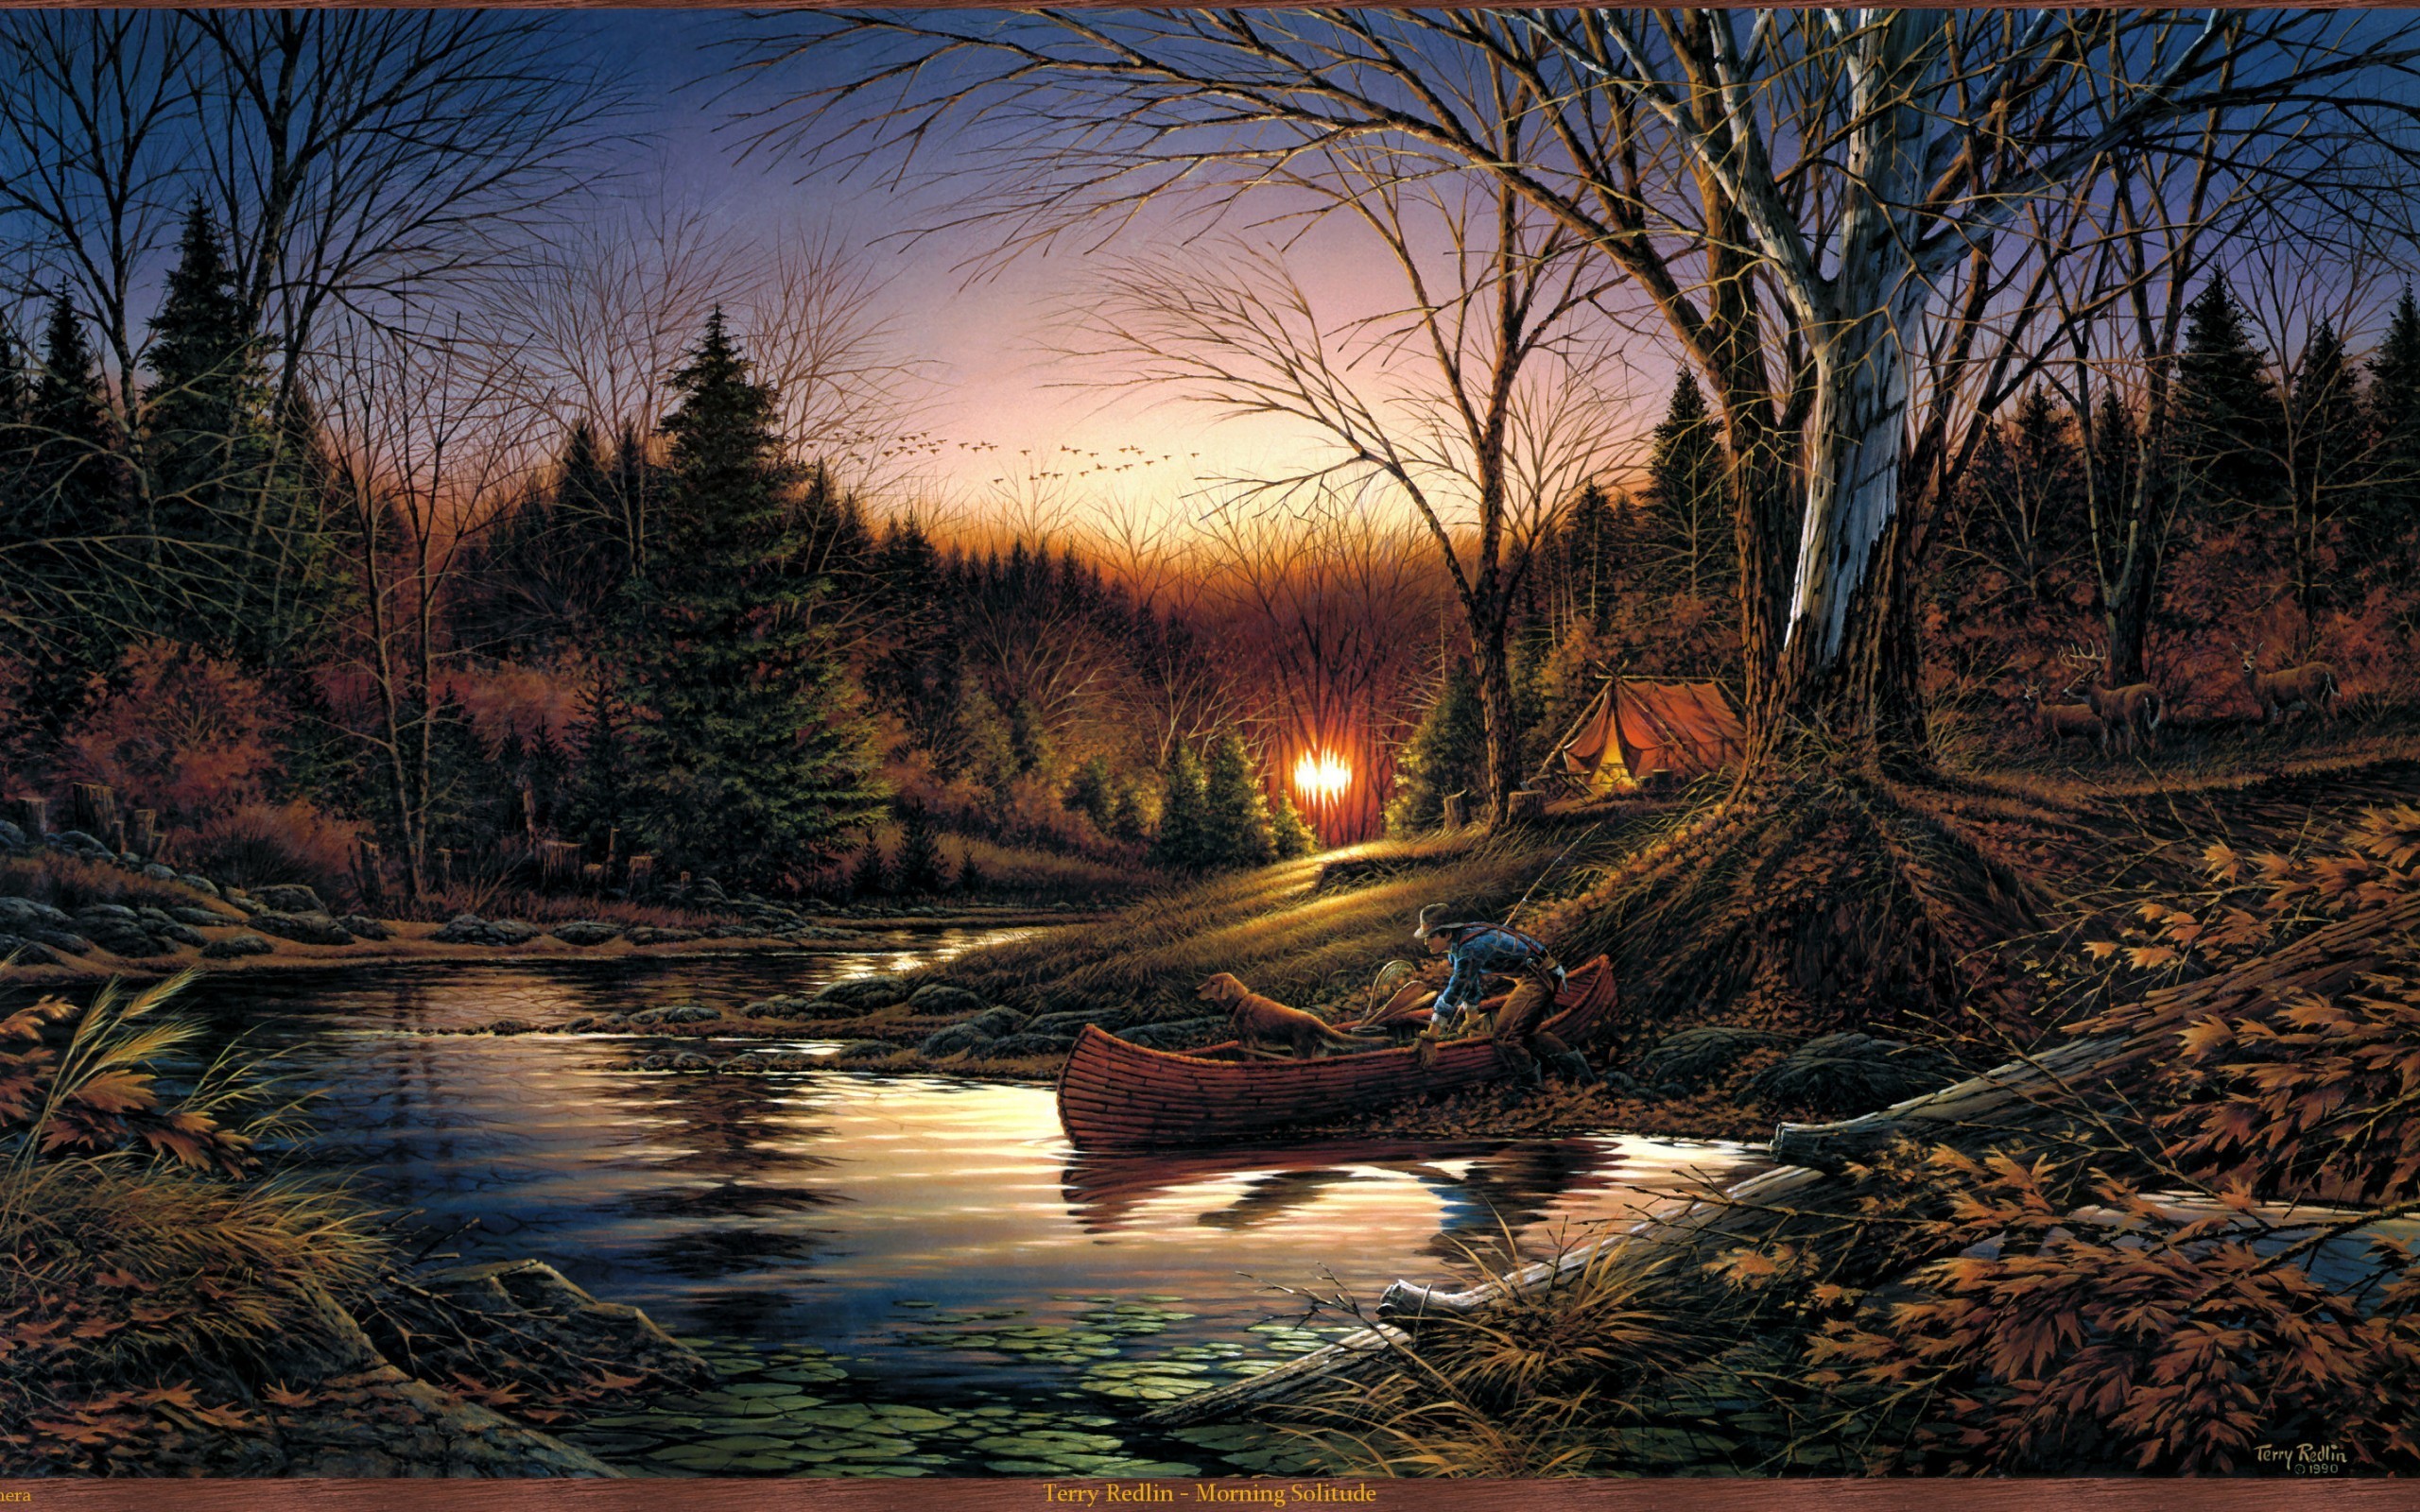 картина, осеннее утро, восход солнца, лес, озеро, палатка, человек, лодка, собака, живопись, Picture, autumn morning, sunrise, forest, lake, tent, man, boat, dog, painting